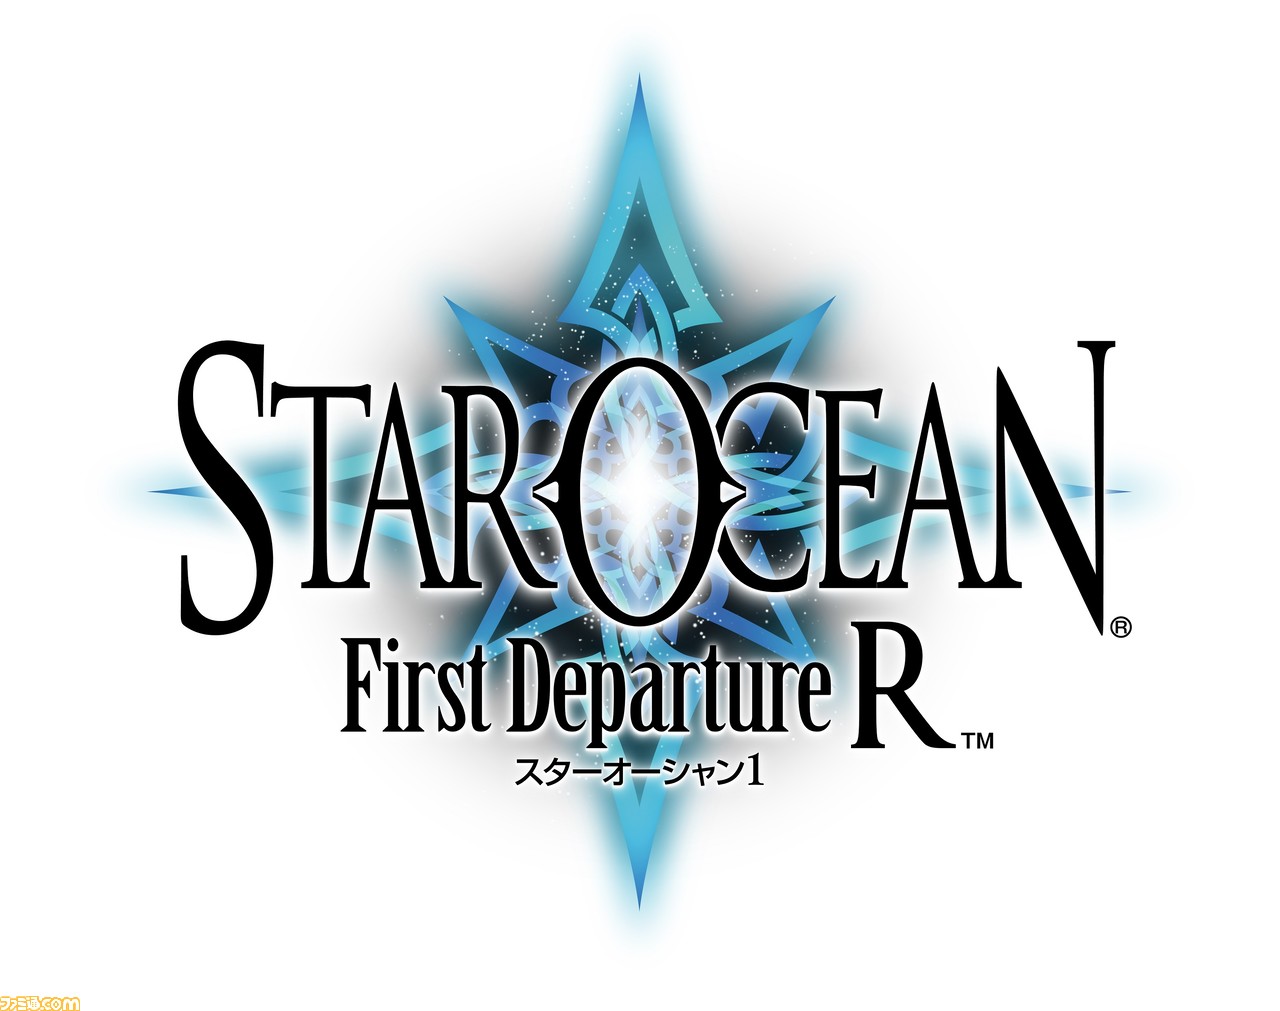 『スターオーシャン 1 -First Departure R-』の配信がスタート。初代『スターオーシャン』がHDでよみがえる！